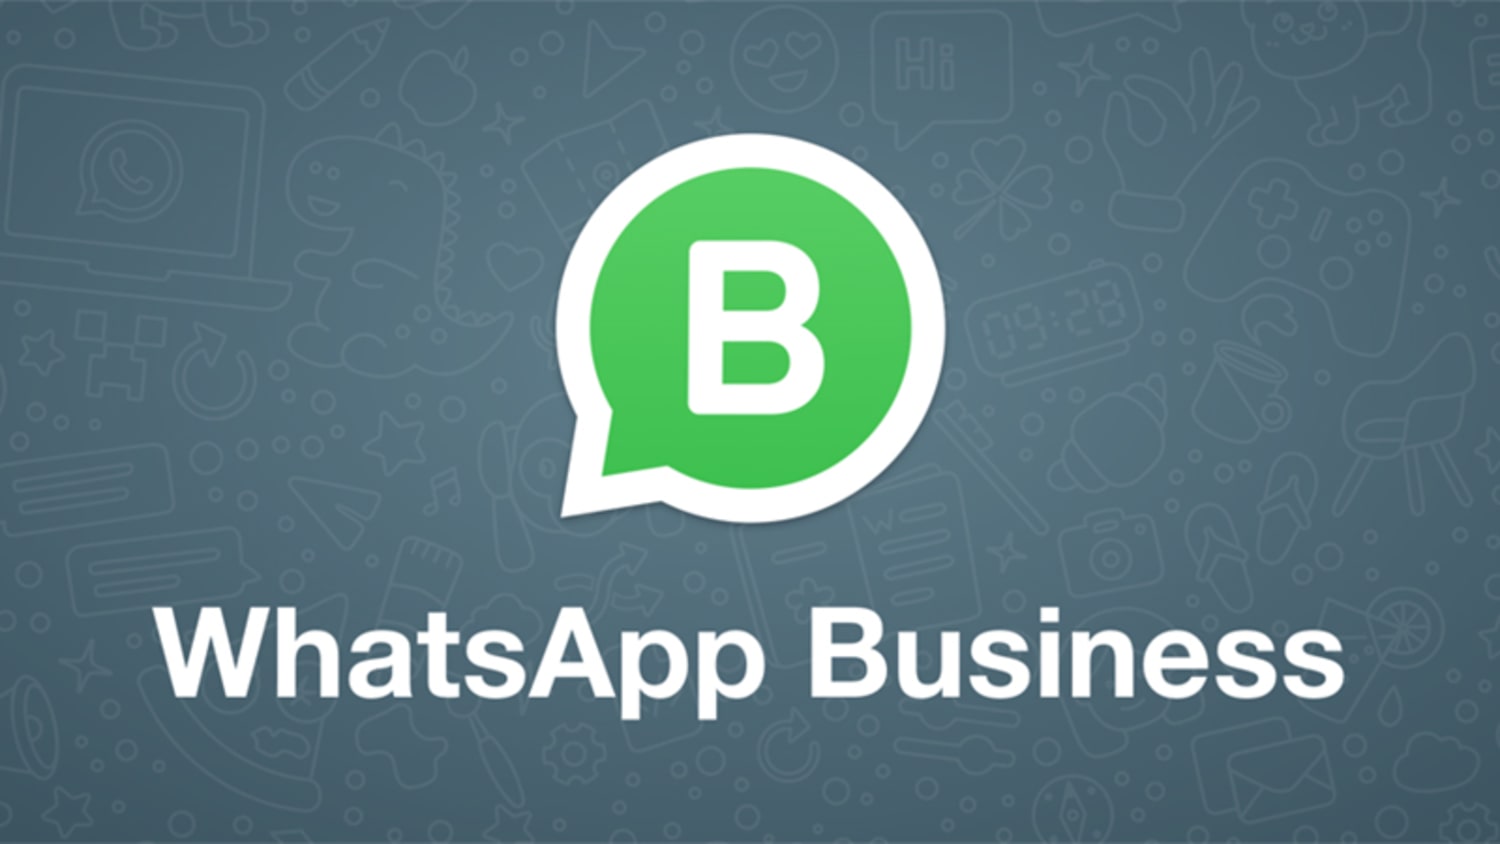 Como enviar mensagem em massa no WhatsApp business 6